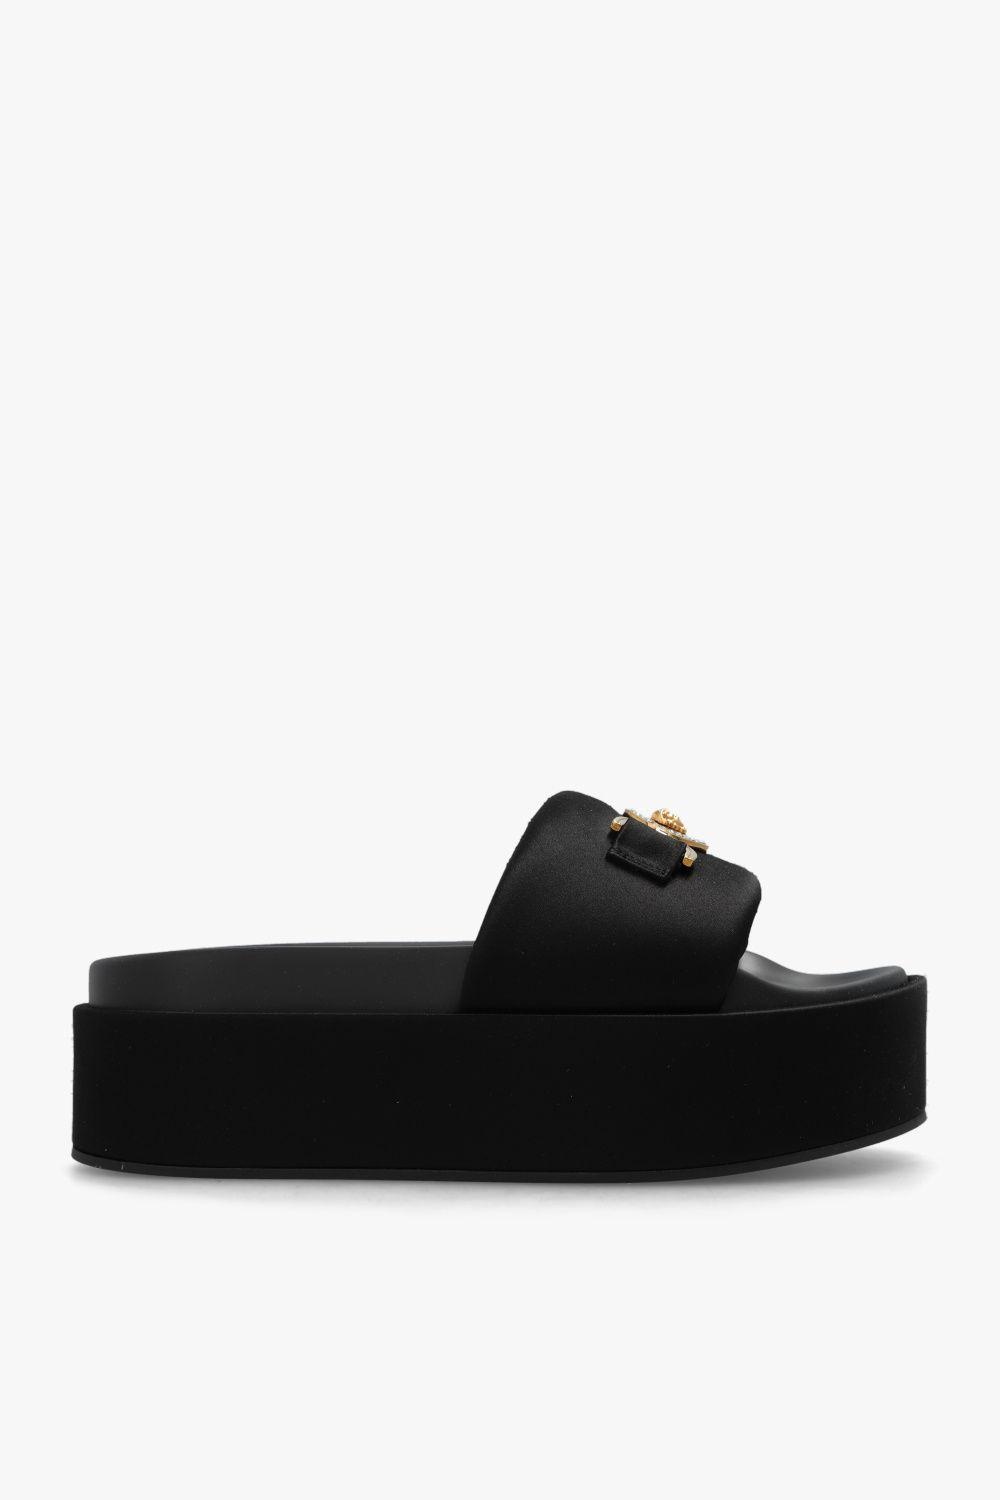 Versace 'medusa Biggie' Platform Sandals in Black | Lyst